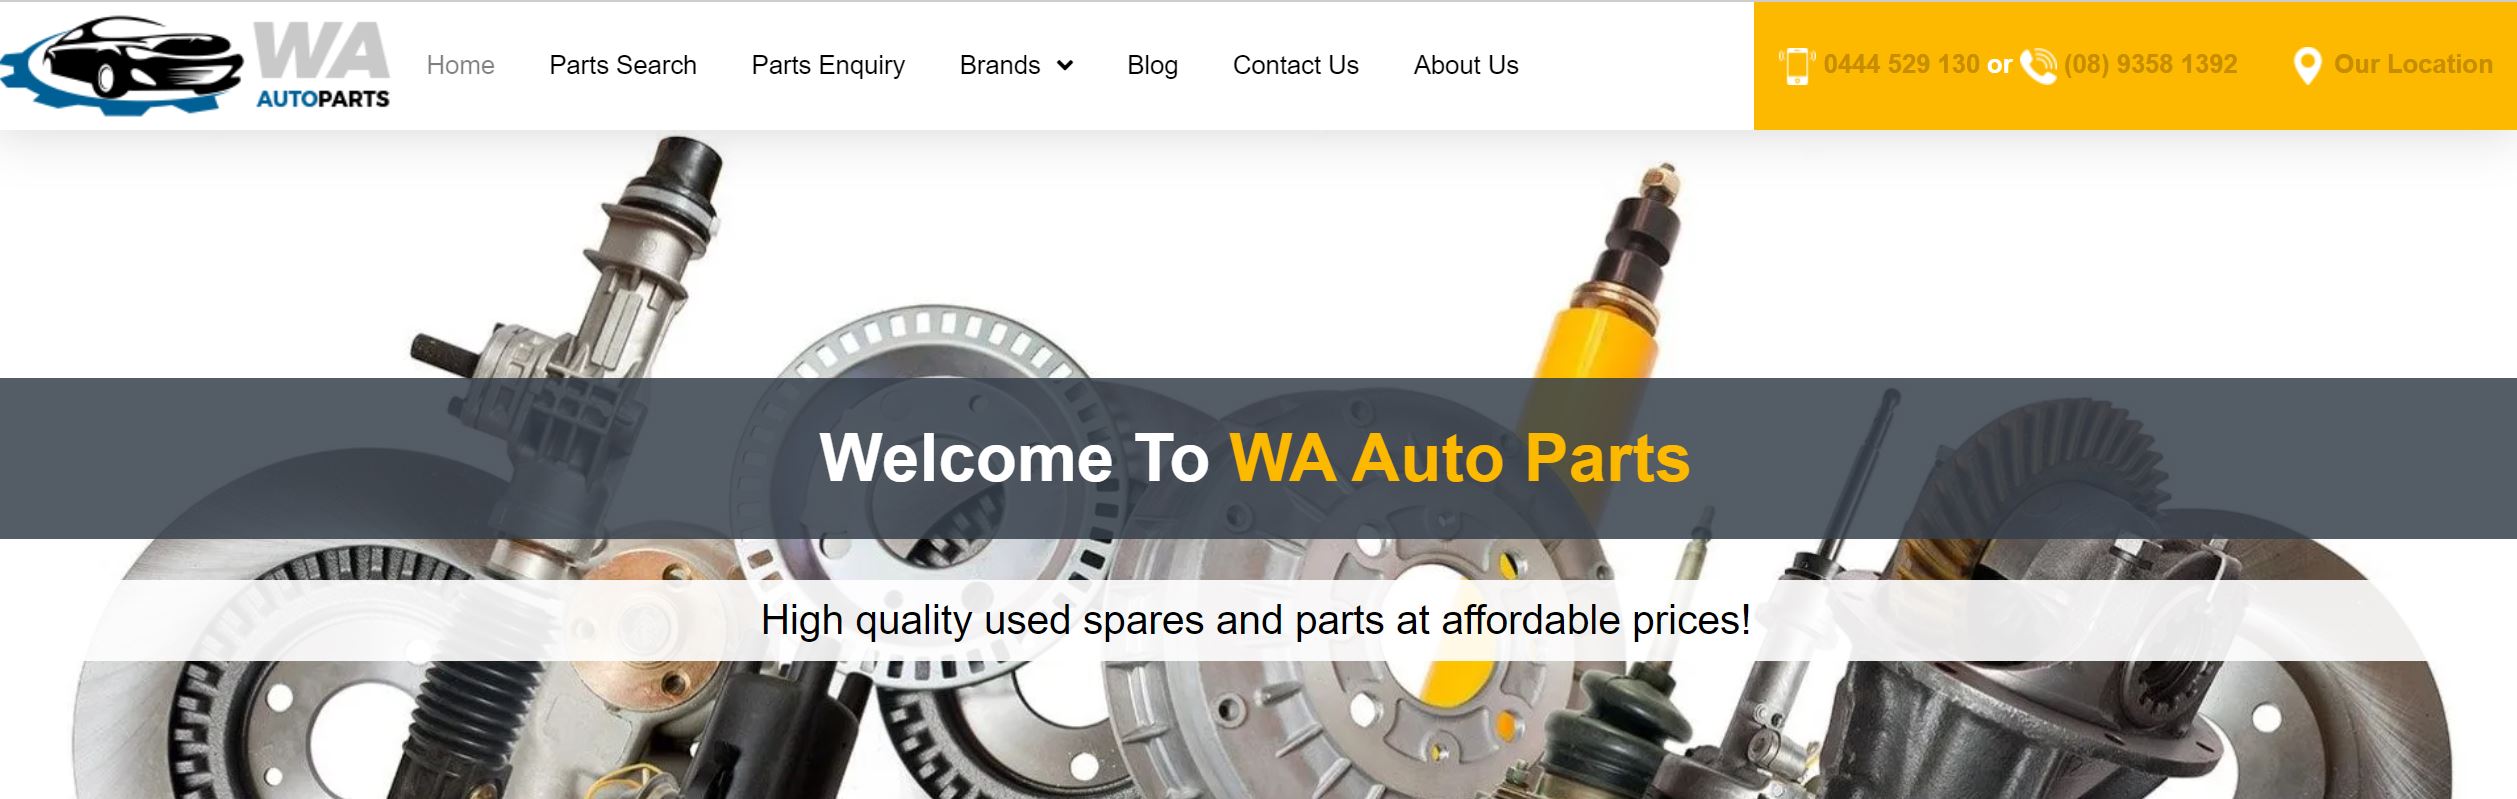 WA Auto Parts